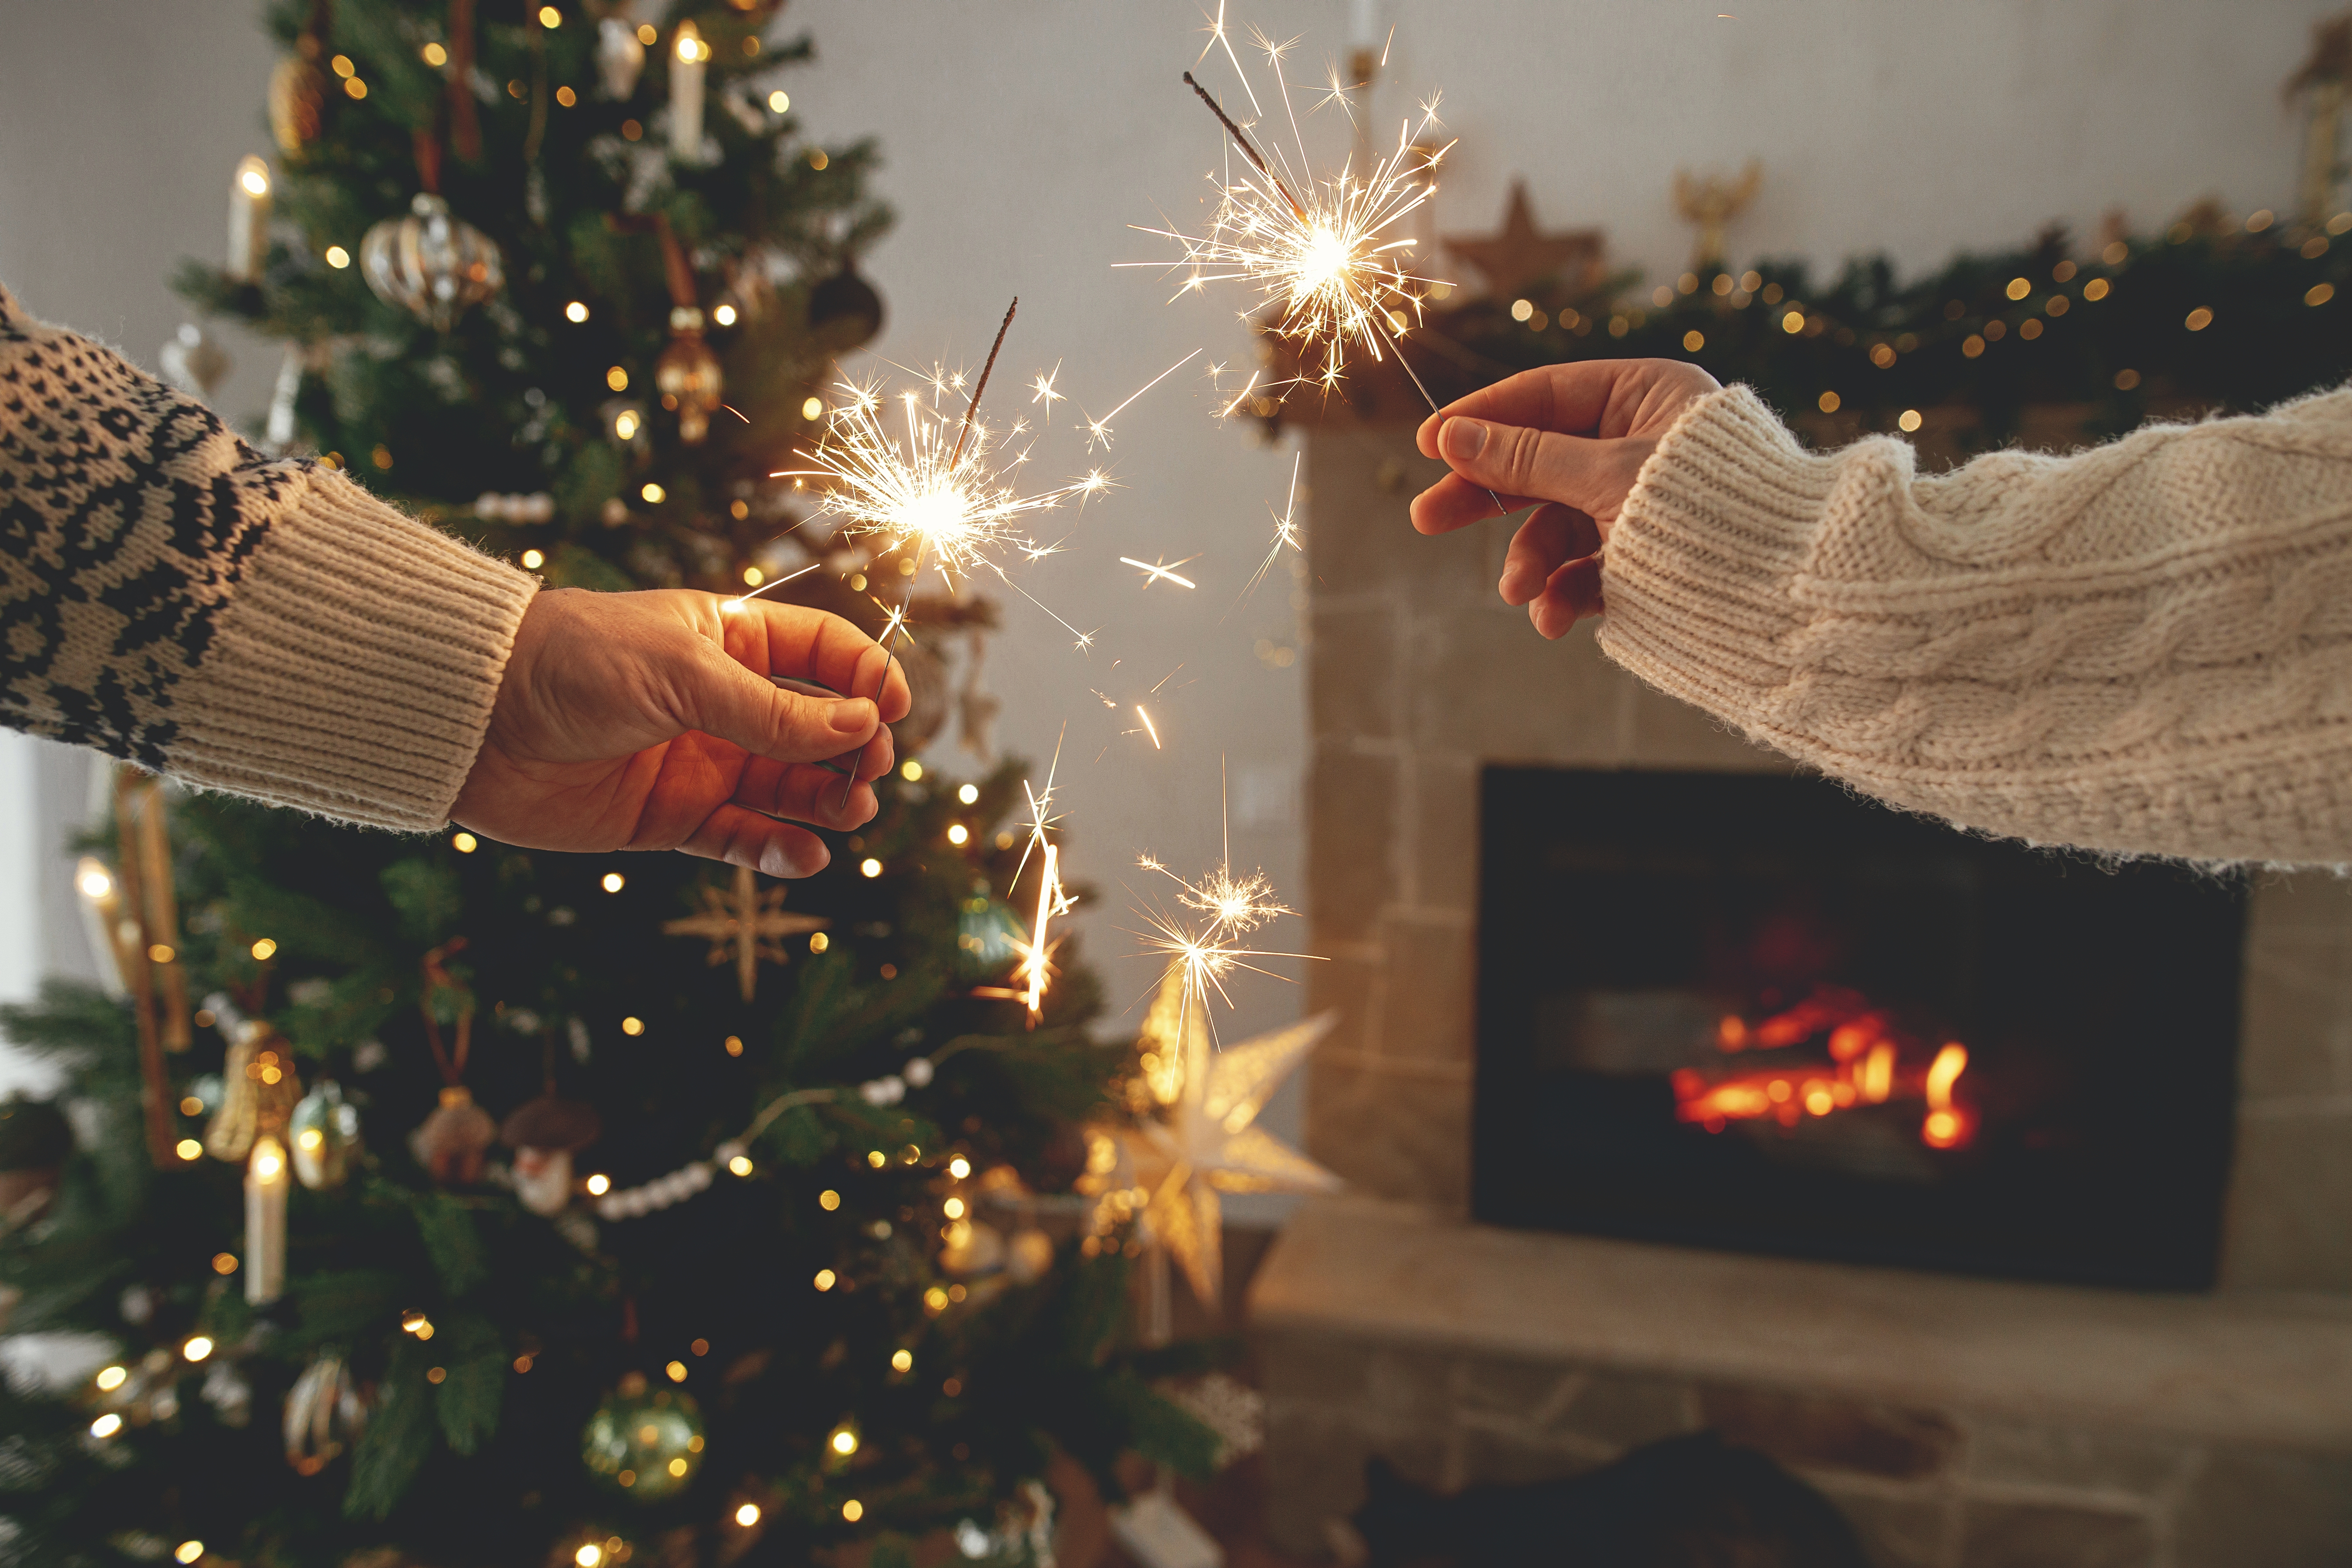 Deux personnes faisant brûler des cierges magiques près d'un arbre de Noël | Source : Shutterstock